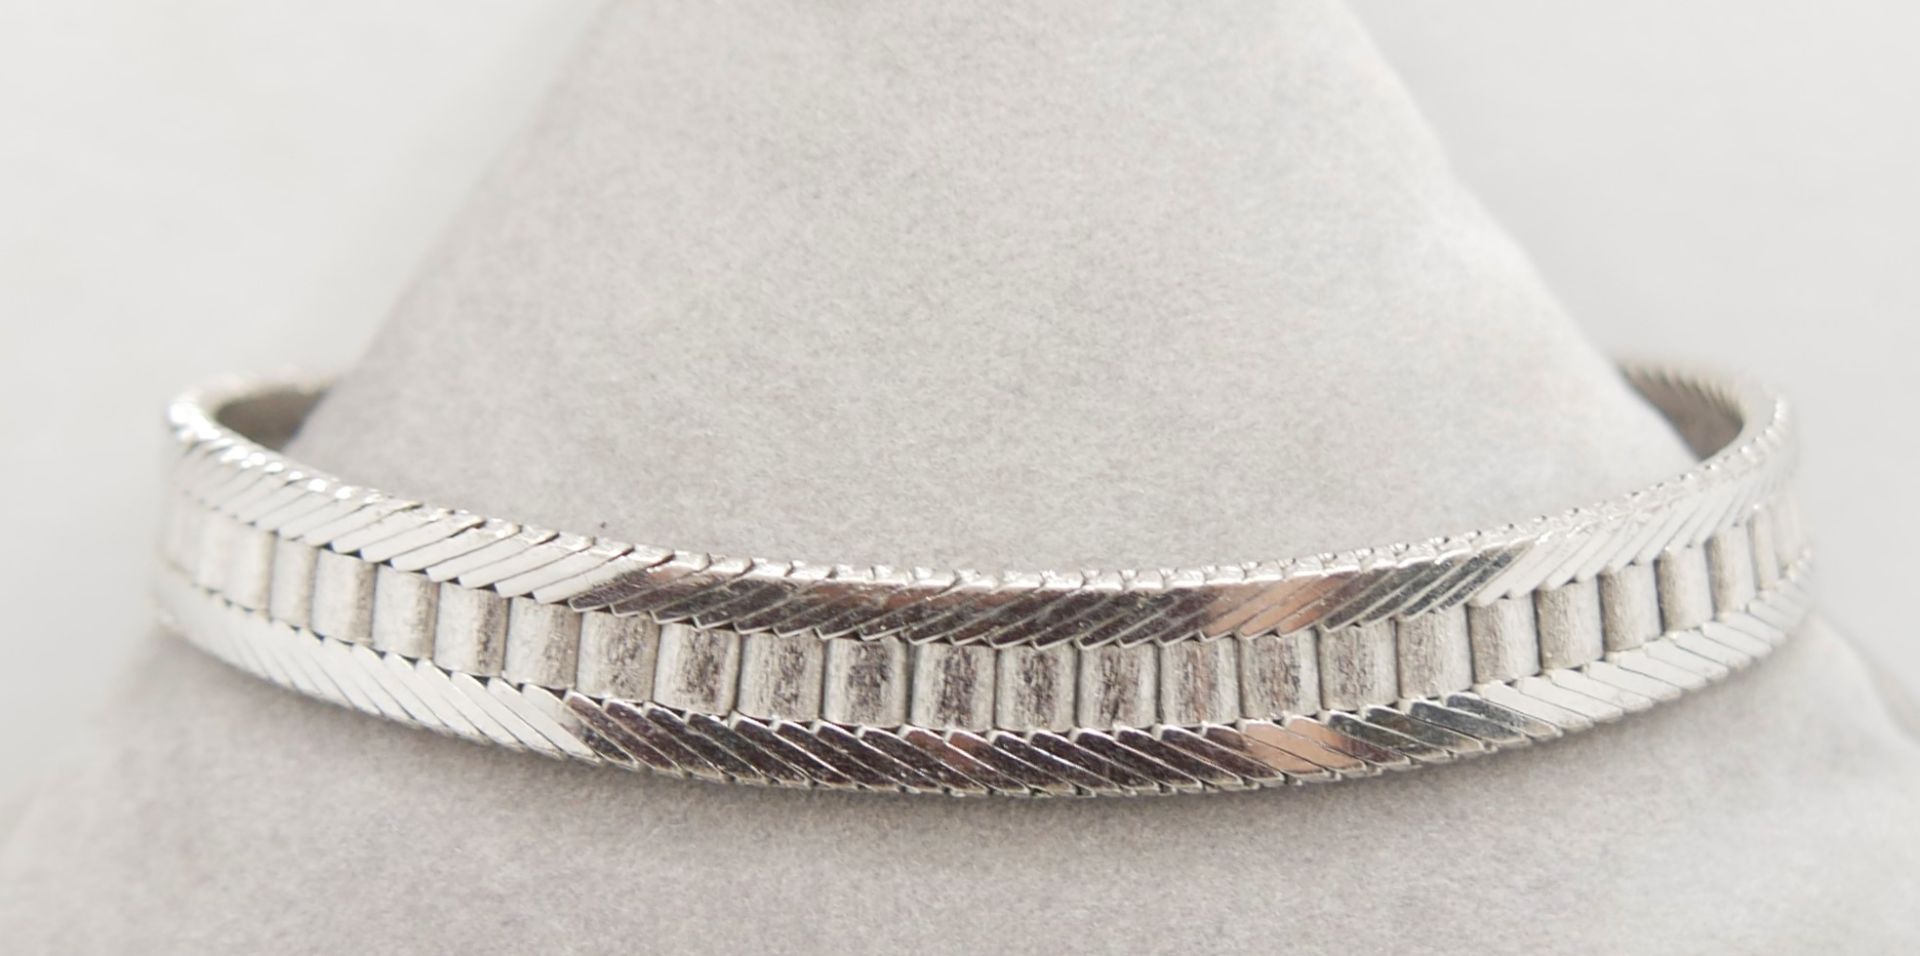 Armband, 800er Silber JSF gepunzt, Länge ca. 19,5 cm.